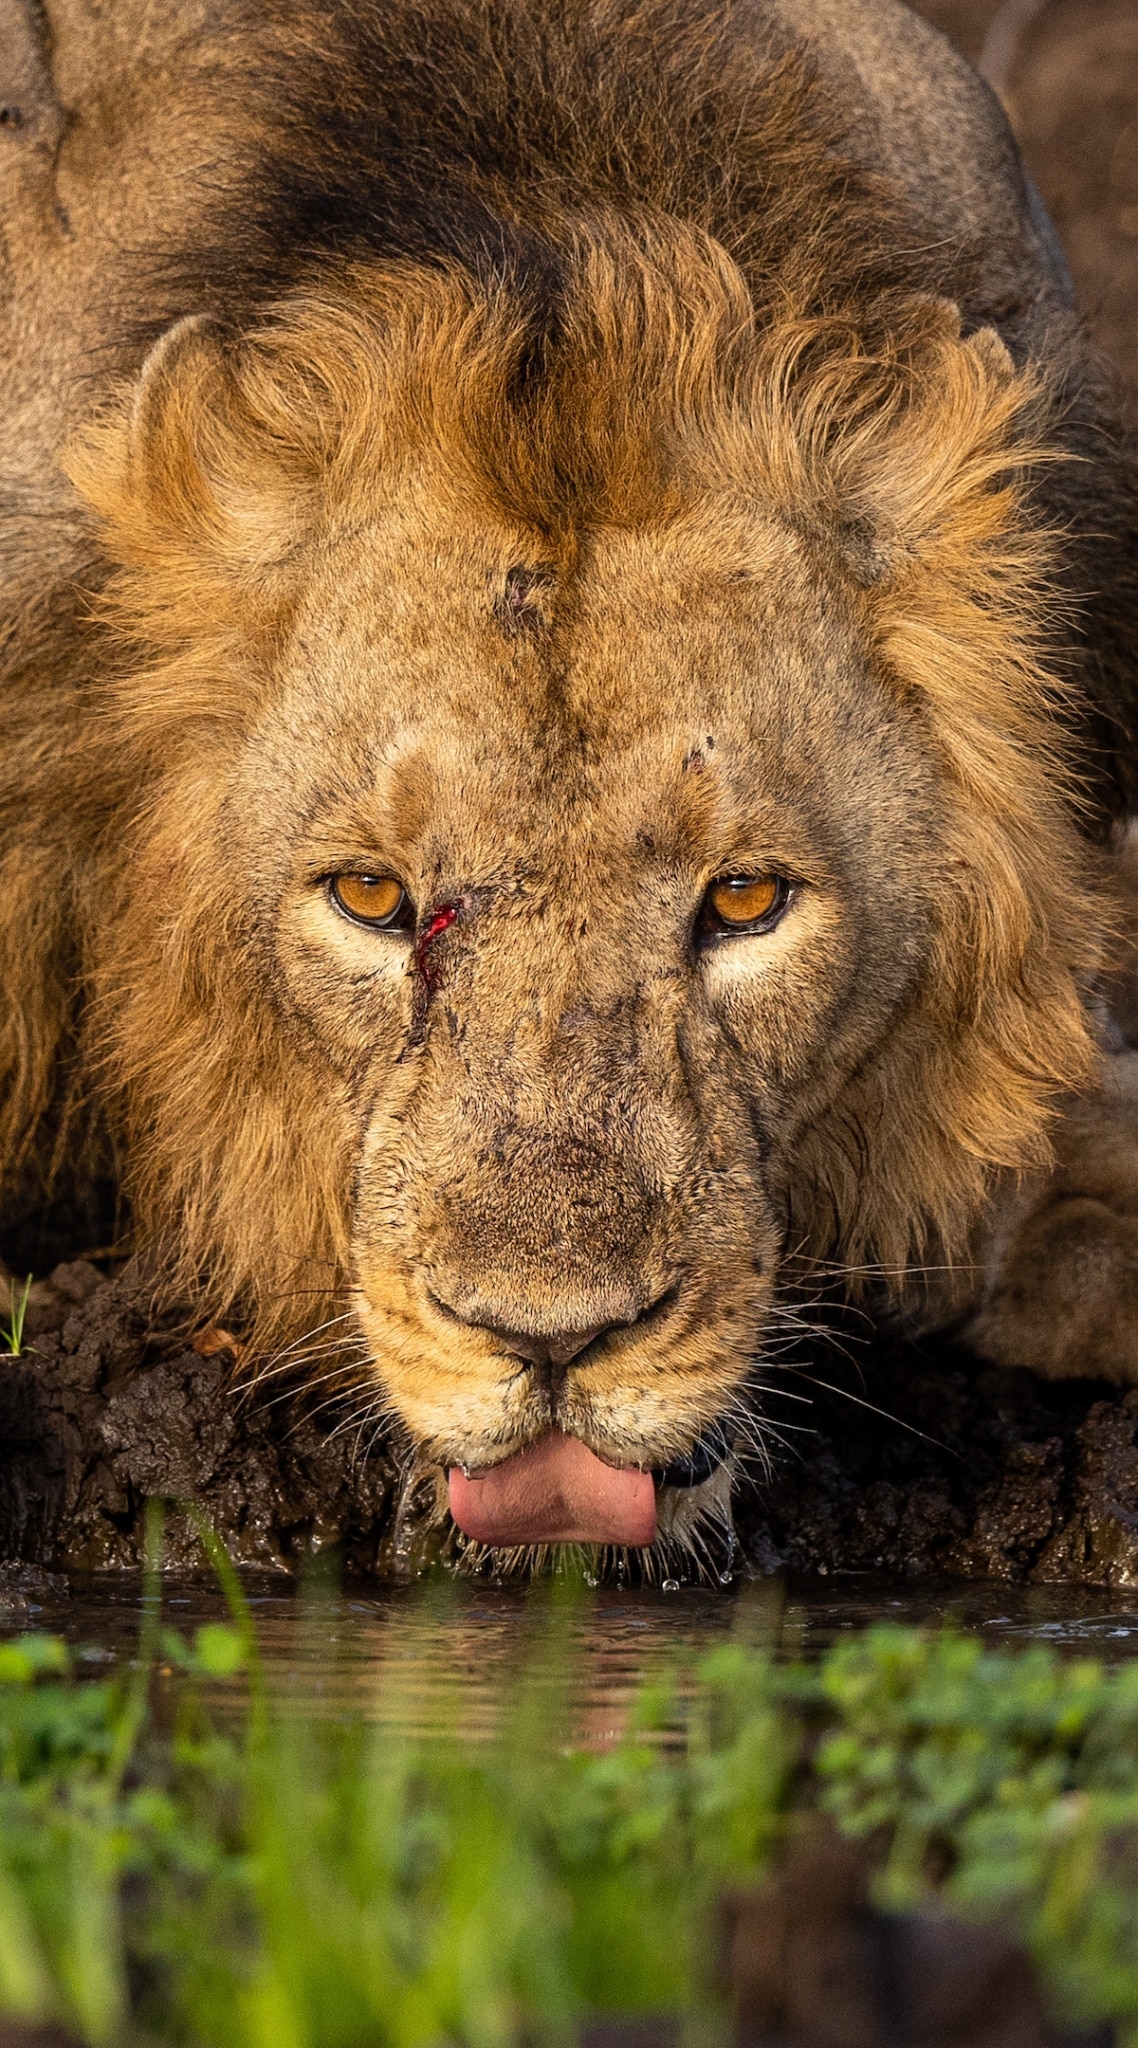 Lion Drinking Water by Hardik Shelat